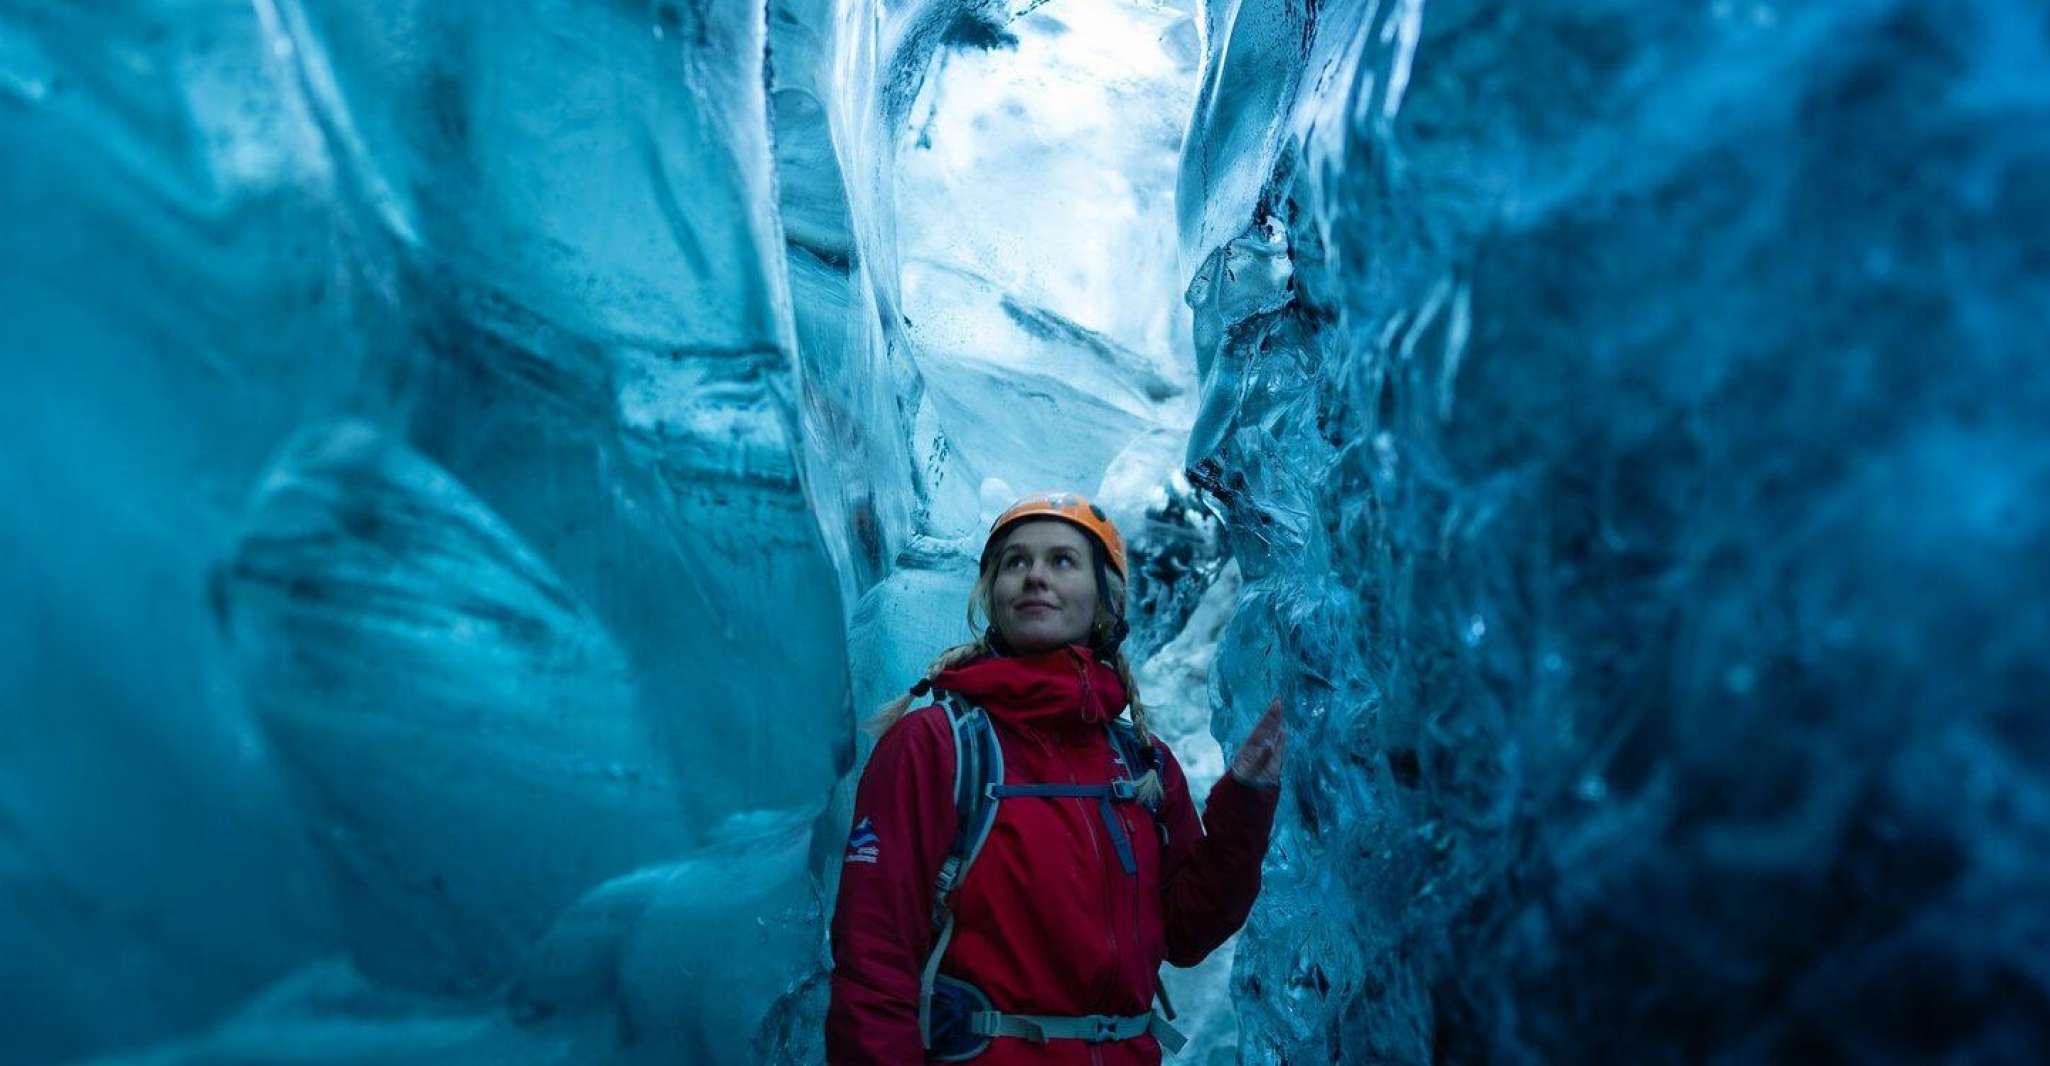 From Jökulsárlón, Crystal Ice Cave Guided Day Trip - Housity